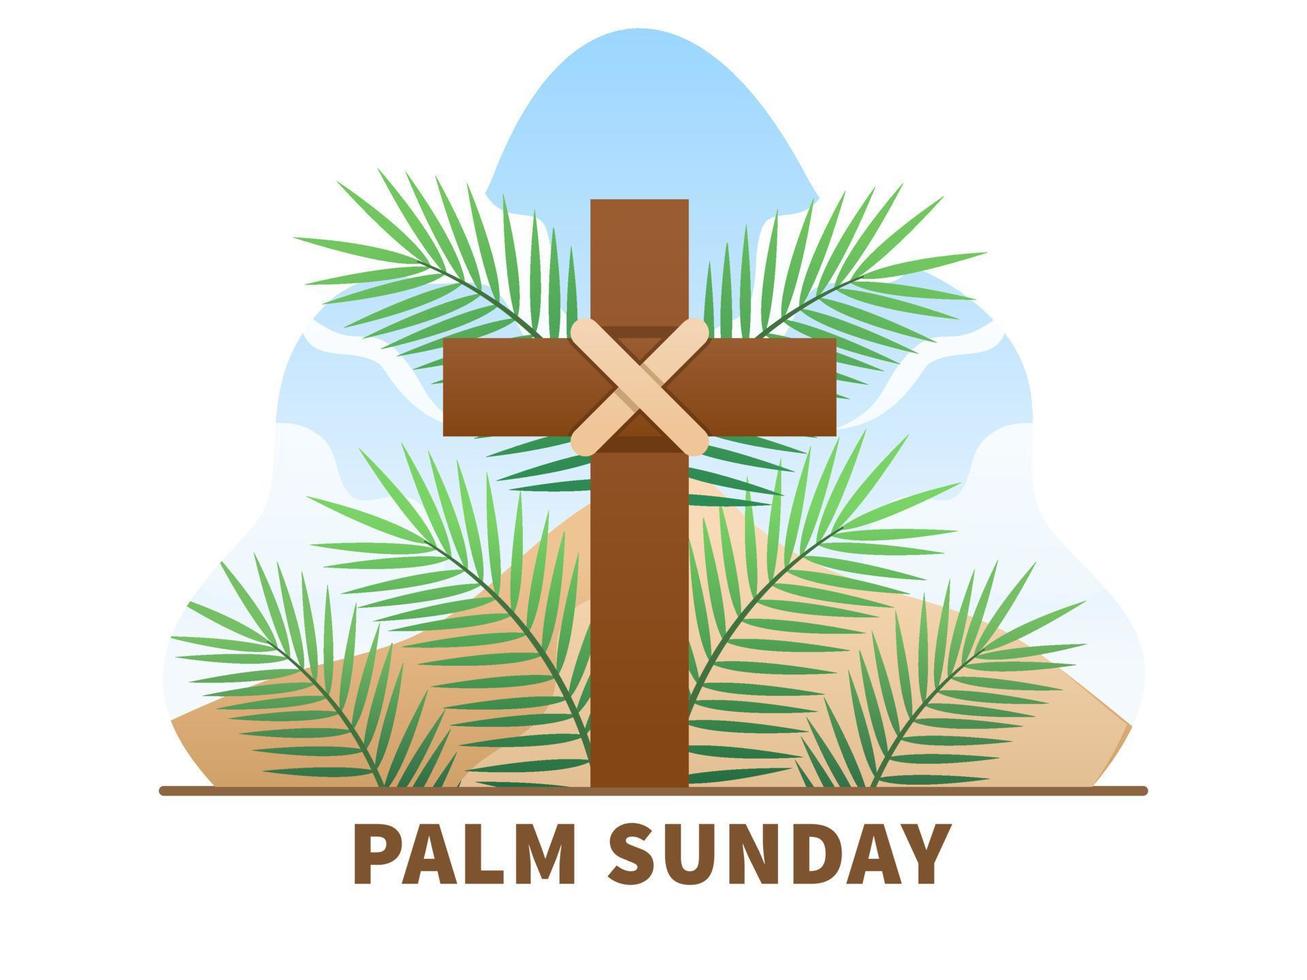 feriado religioso de domingo de palma cristão com folhas de palmeira e vetor de ilustração cruzada. pode ser usado para cartão postal, banner, pôster, web, mídia social, impressão, livro, etc.